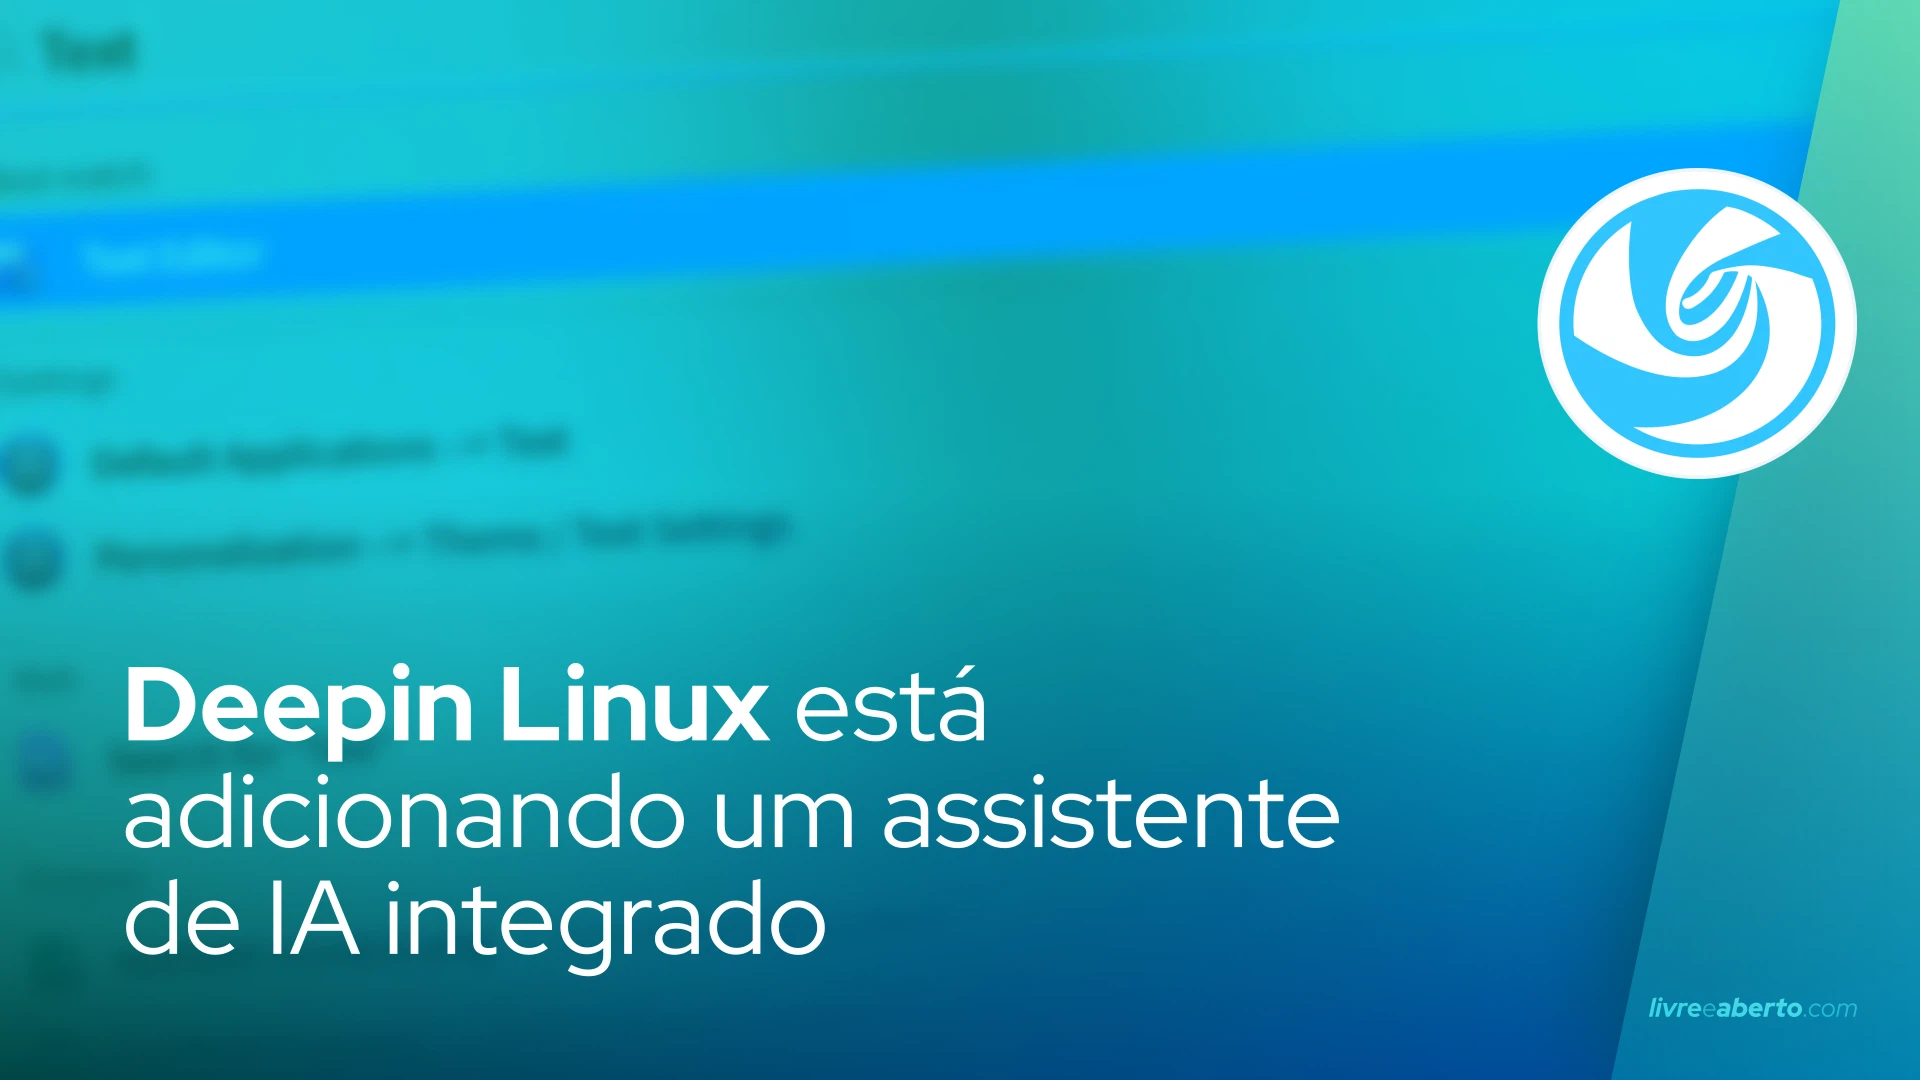 Deepin Linux está adicionando um assistente de IA integrado